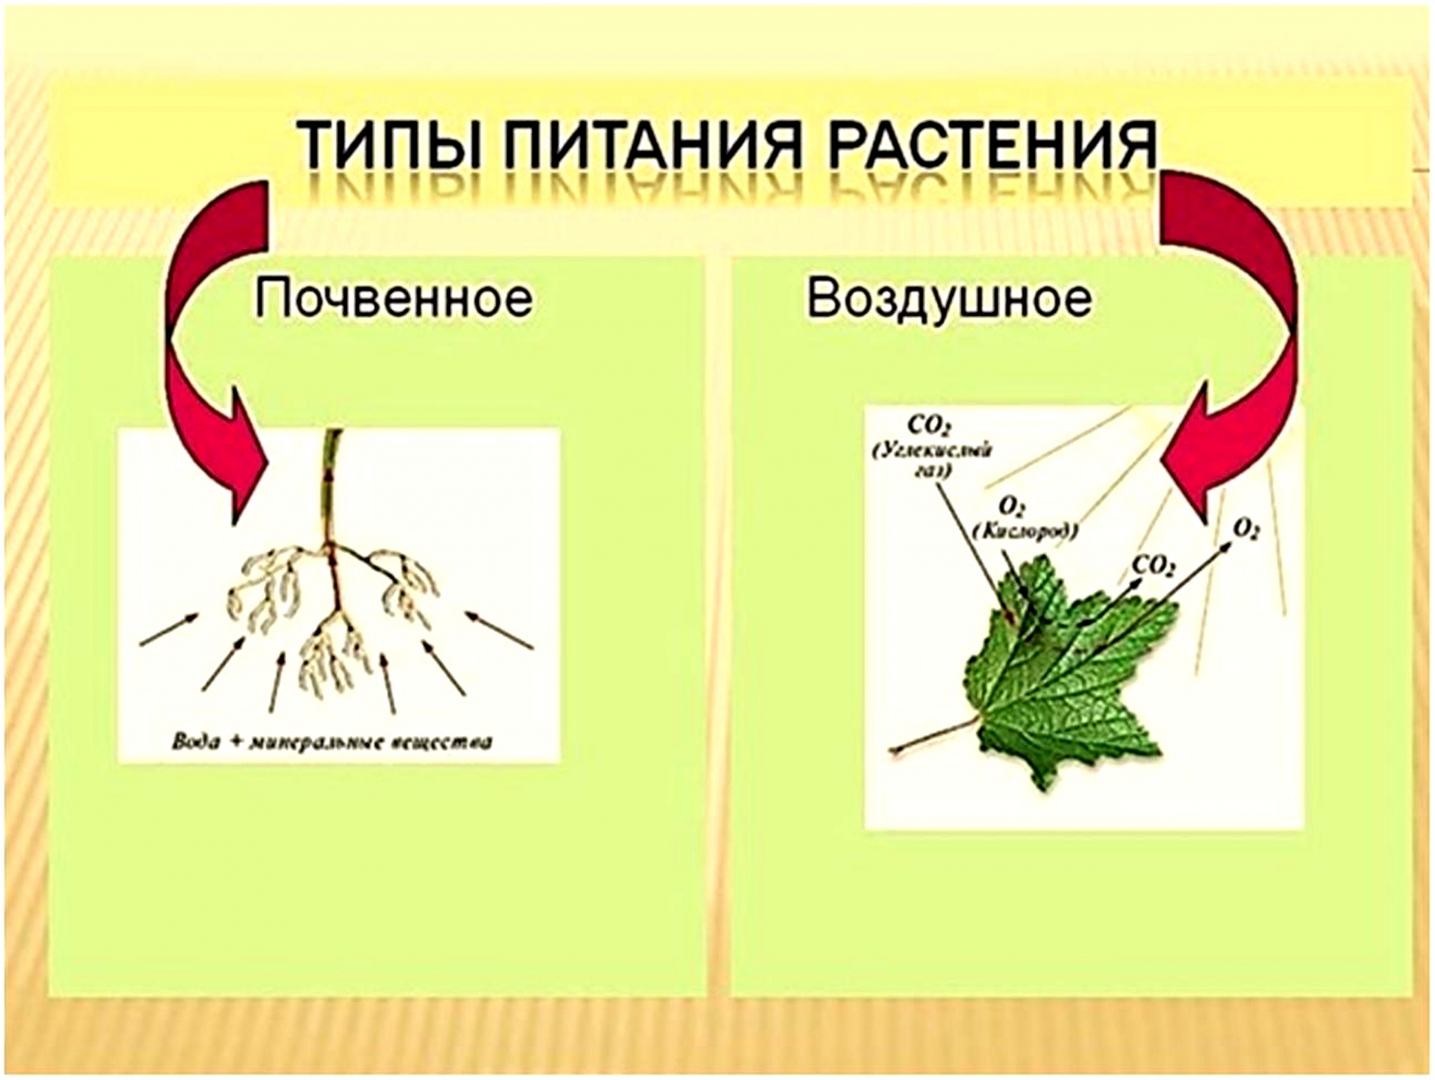 Схема почвенное и воздушное питание растений